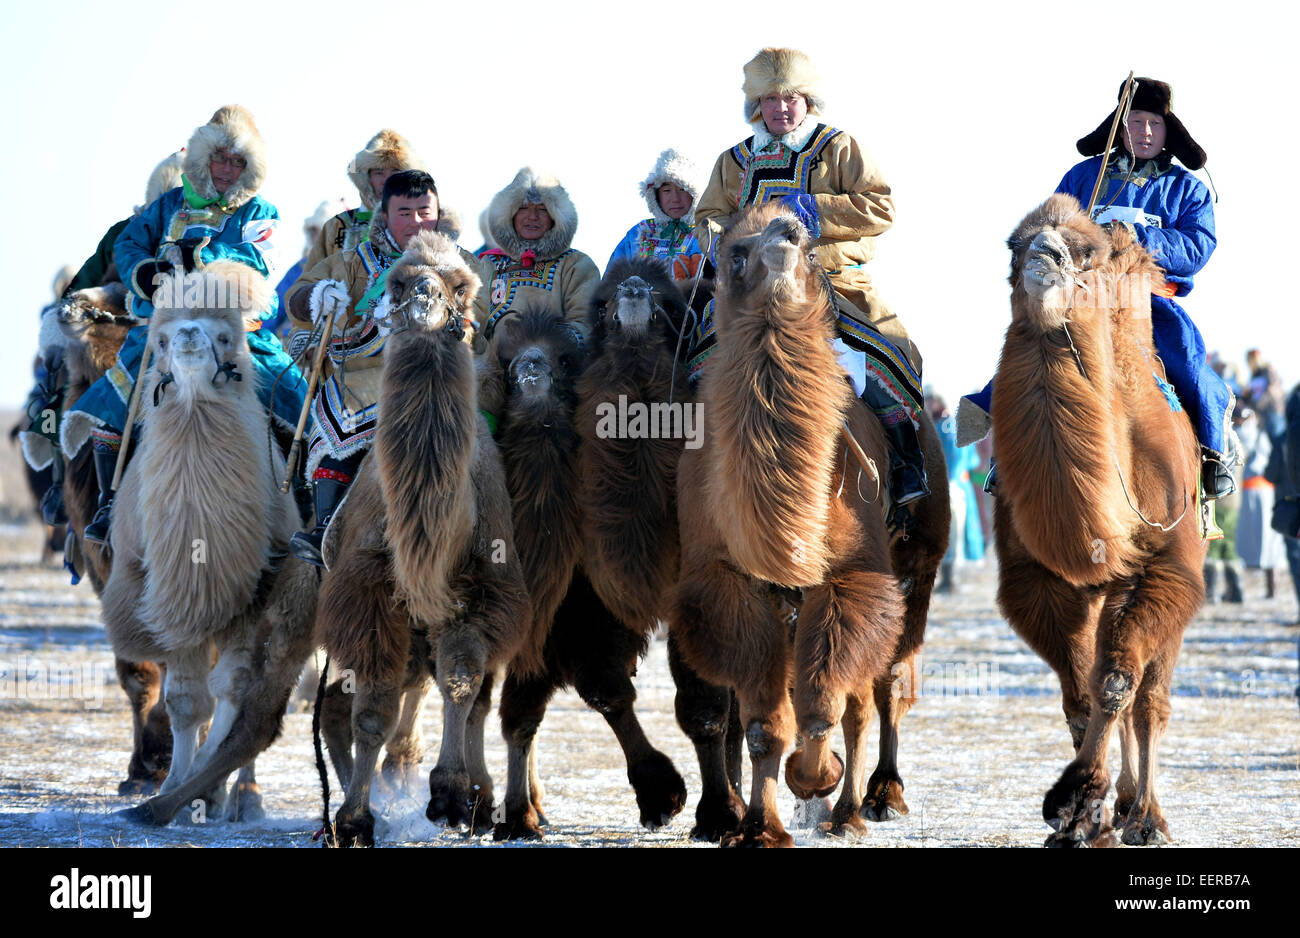 Bannière Ujimqin l'Est de la Chine, région autonome de Mongolie intérieure. 21 Jan, 2015. Bergers sur leurs chameaux, participer à un Nadam d'hiver dans l'Est de la bannière Ujimqin, Chine du nord, région autonome de Mongolie intérieure, le 21 janvier 2015. Nadam de masse est un festival mongol traditionnel où les gens célébrer les récoltes et prier pour la bonne chance. Les nomades locaux participeront à une série de manifestations sportives, telles que le tir à l'arc, courses de chevaux, les courses de chameaux et de lutte mongole. Credit : Ren Junchuan/Xinhua/Alamy Live News Banque D'Images